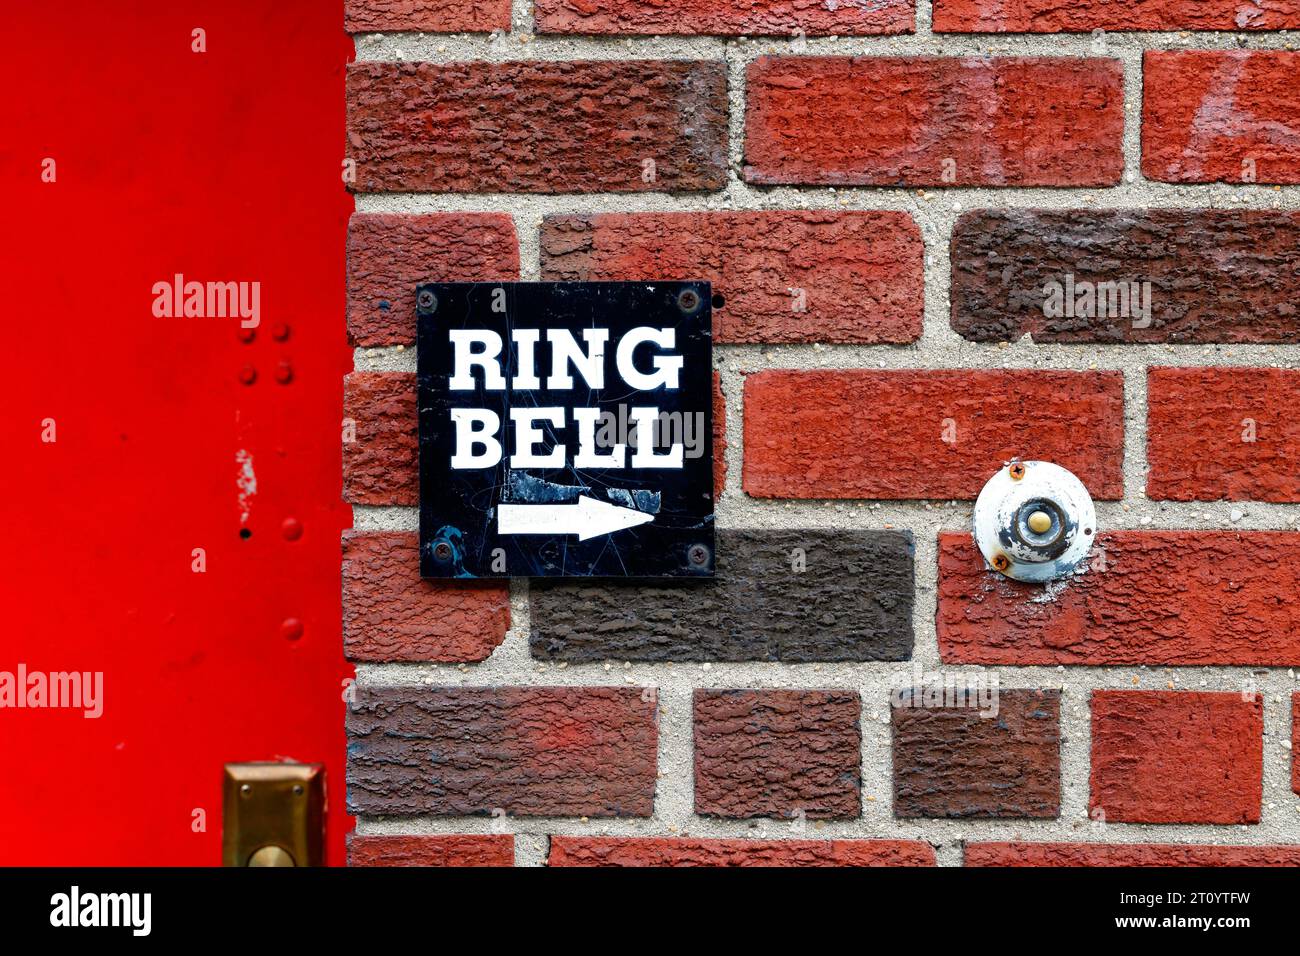 Ein Ring Bell Schild neben einer runden Türglocke an einer roten Ziegelwand Stockfoto